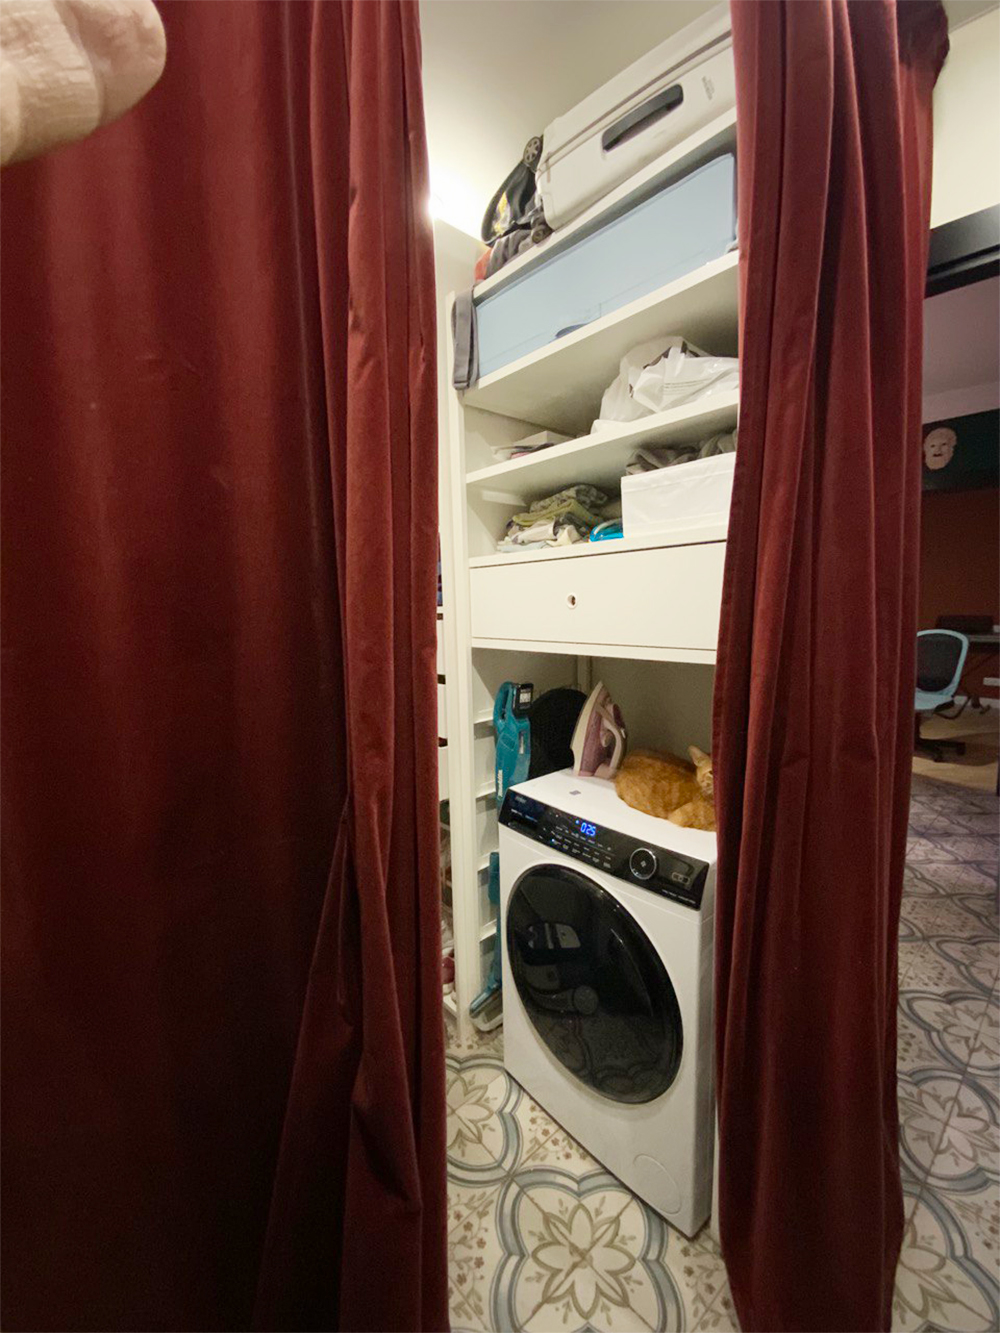 Стирально-сушильная машина — очень удобная вещь в маленькой квартире, избавляет от натянутых веревок с мокрым бельем